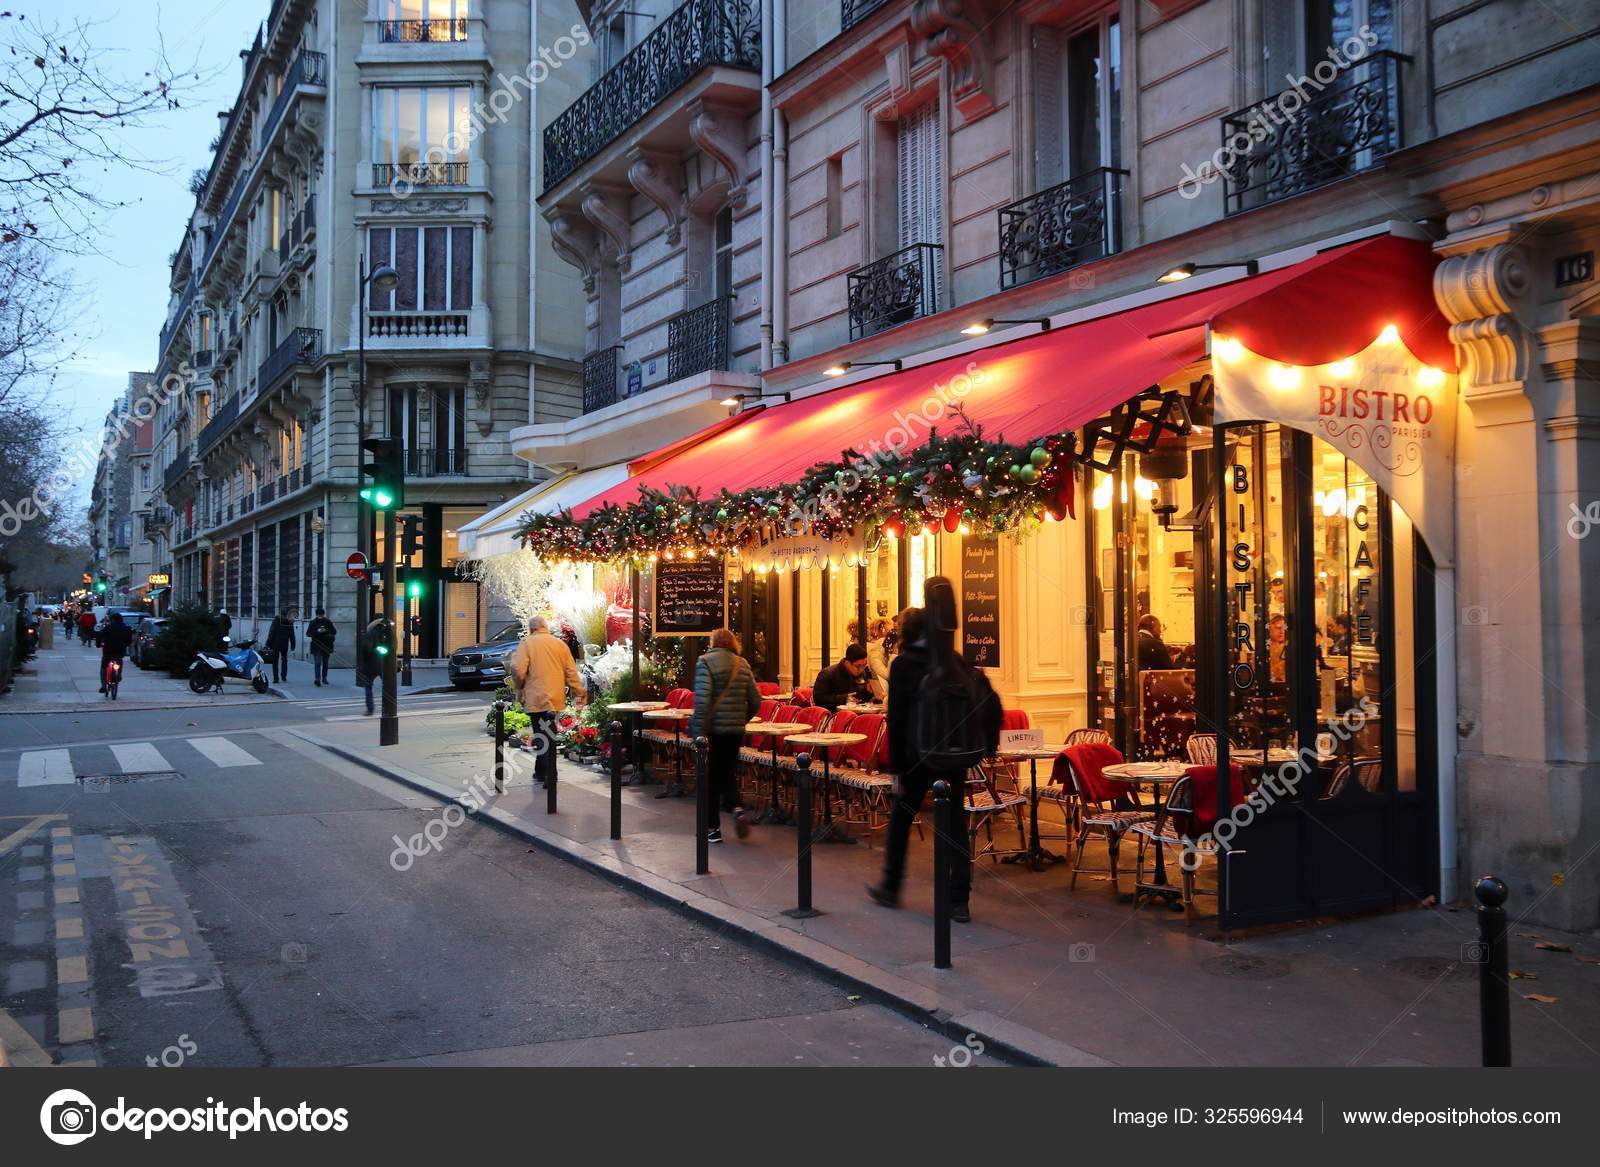 L'Avenue restaurant, Avenue Montaigne, Paris, France Stock Photo